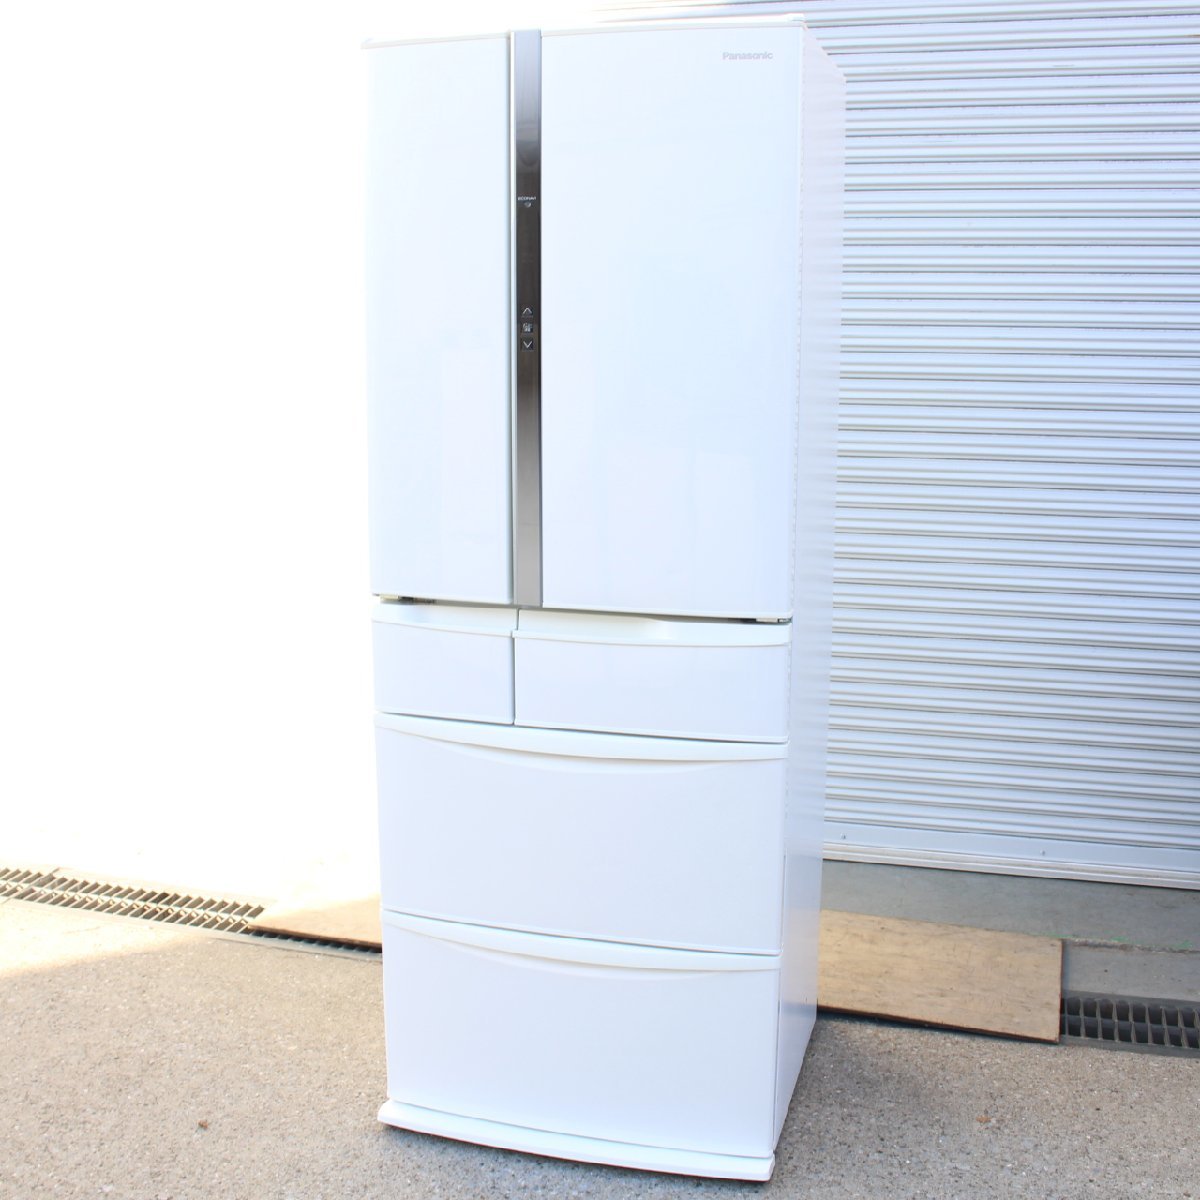 東京都新宿区にて パナソニック 冷蔵庫 NR-FTF468 2014年製 を出張買取させて頂きました。